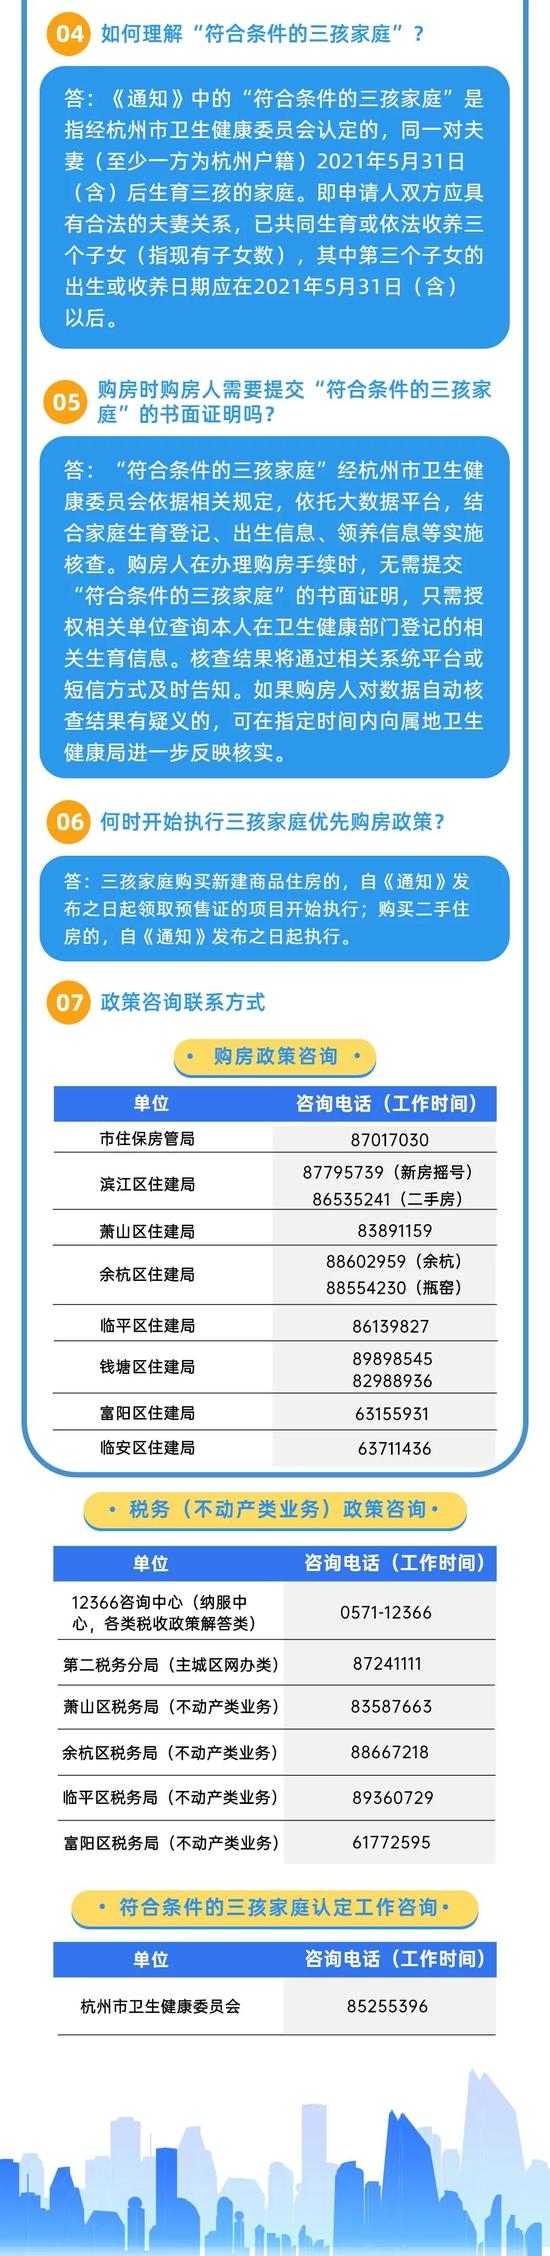 杭州优化二手住房交易政策：非本市户籍家庭 提供12个月社保证明可购房